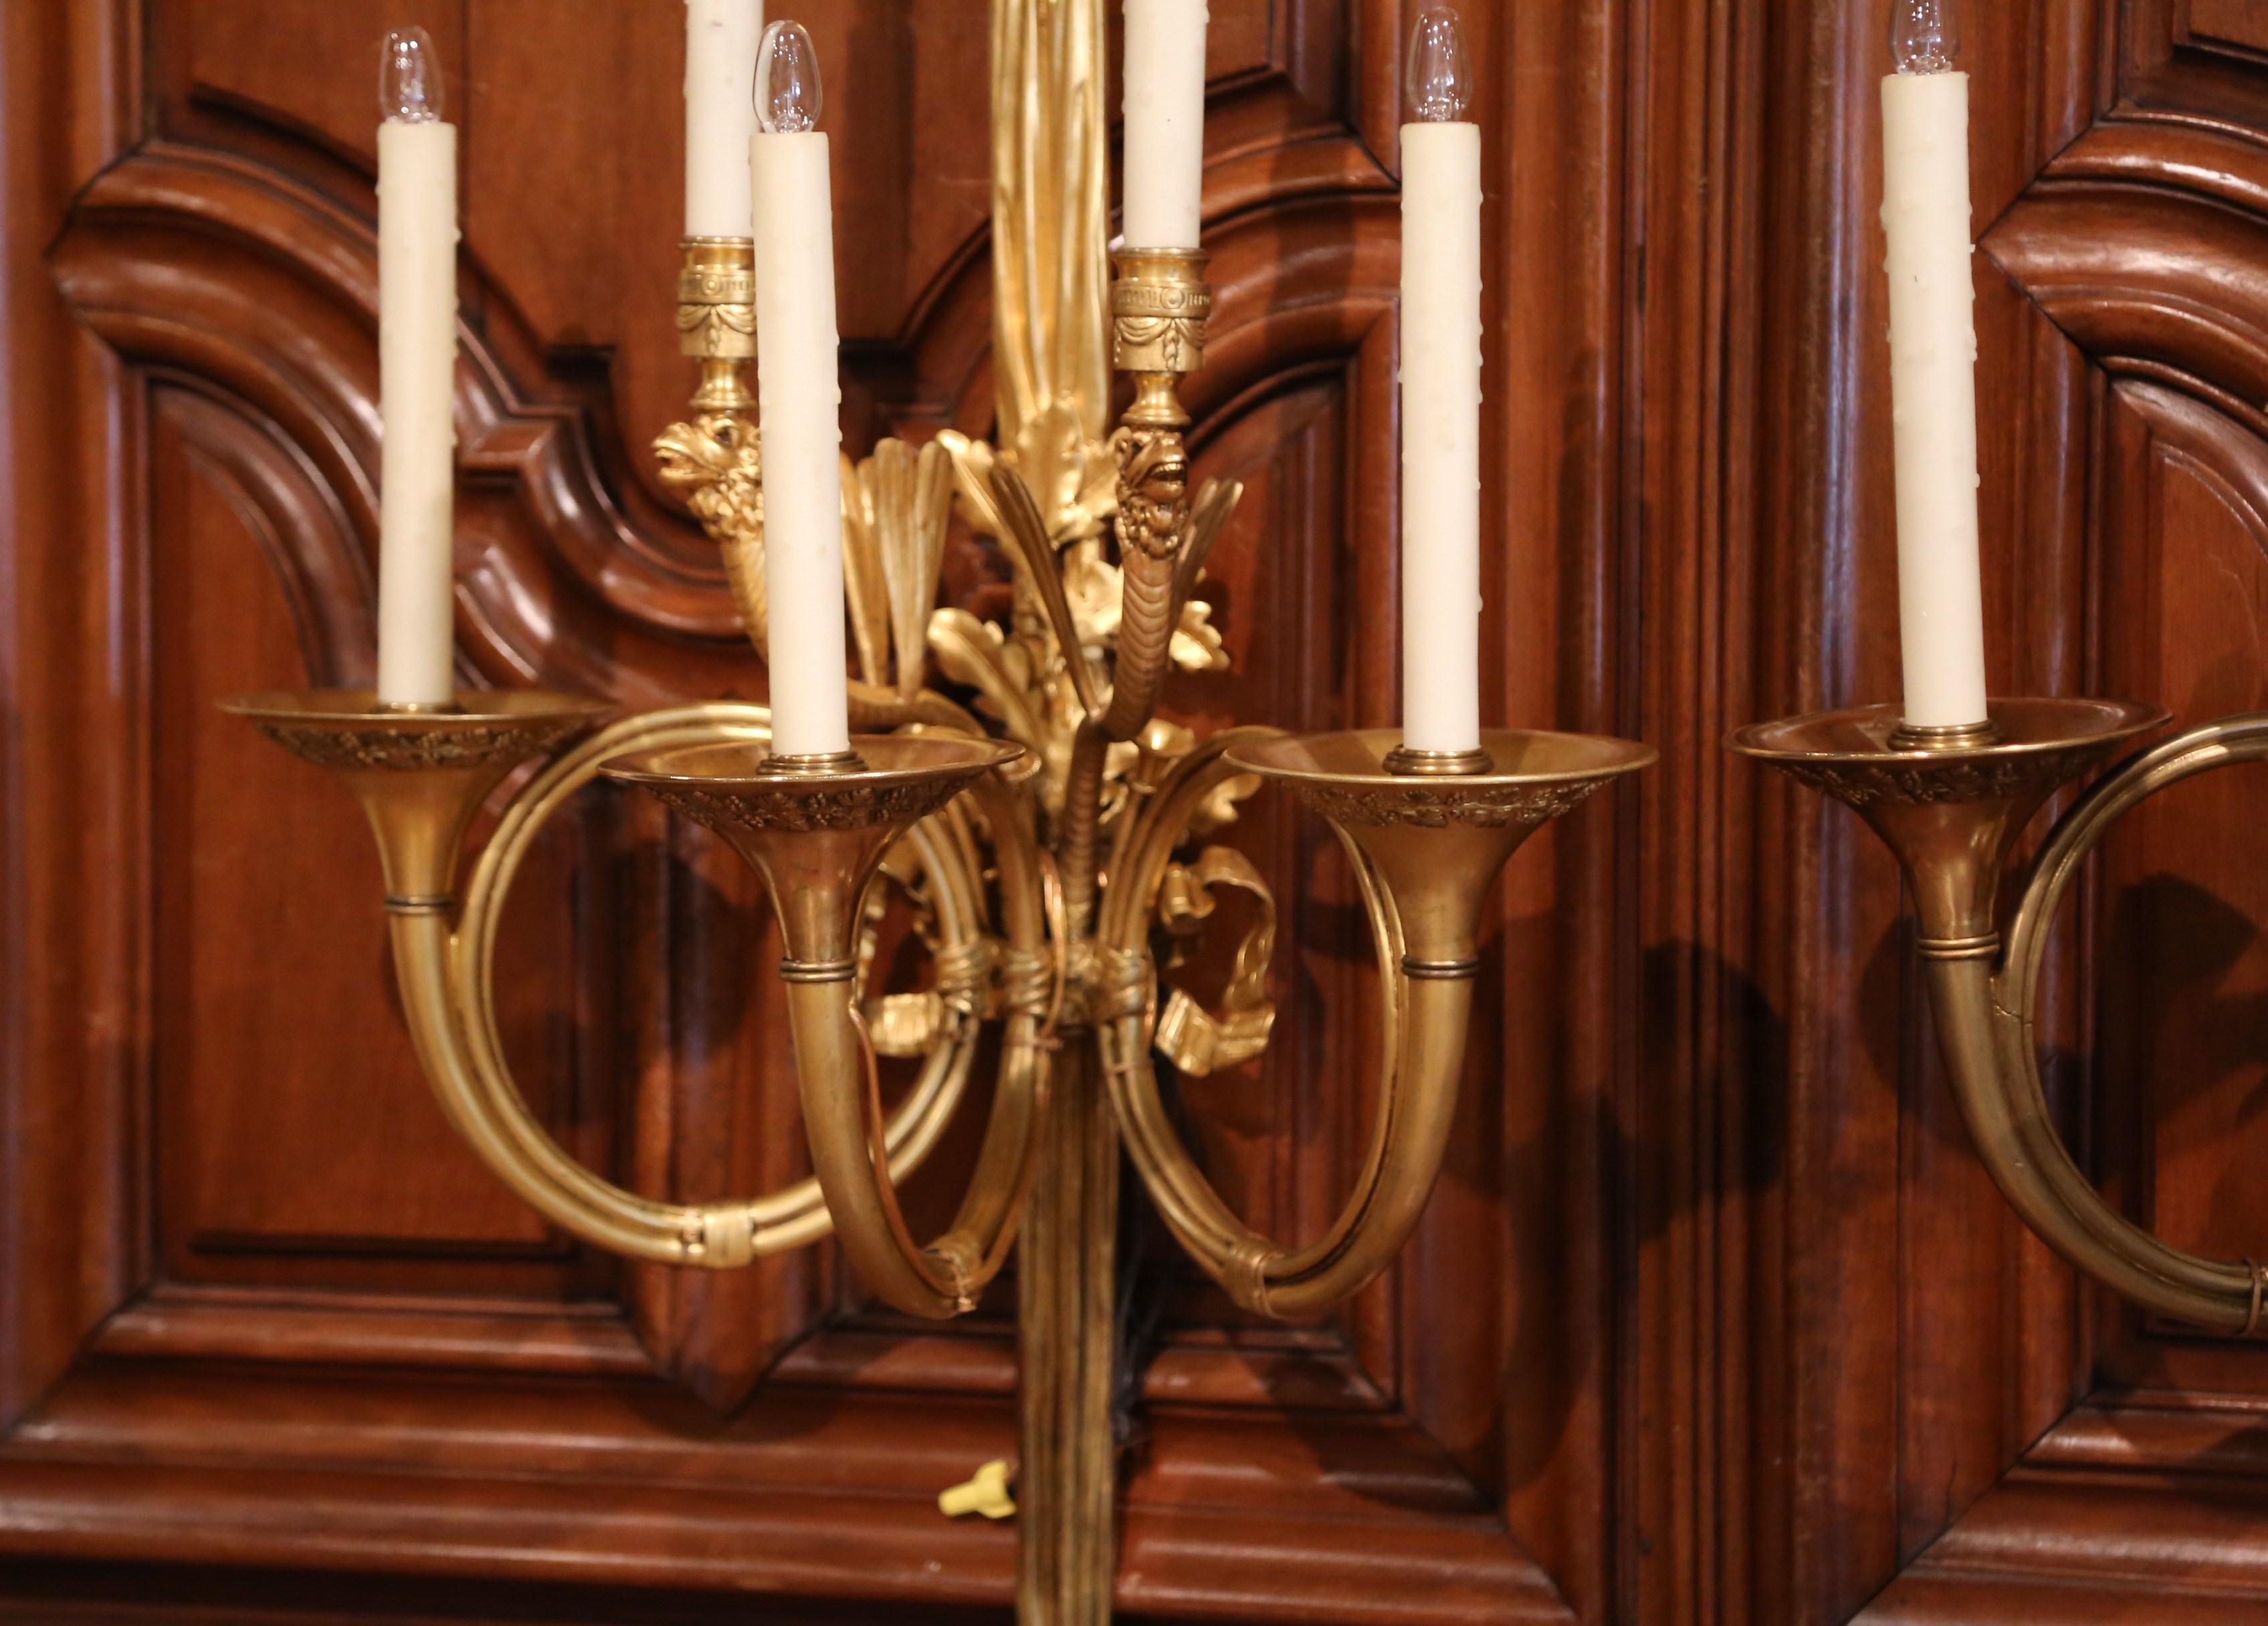 Diese eleganten antiken Bronzewandleuchten wurden um 1860 in Frankreich hergestellt. Jede hohe Leuchte ist mit der traditionellen Louis-XVI-Schleife am Giebel versehen, die in der Mitte mit einem Laubdekor und am Sockel mit Quastenmotiven verziert